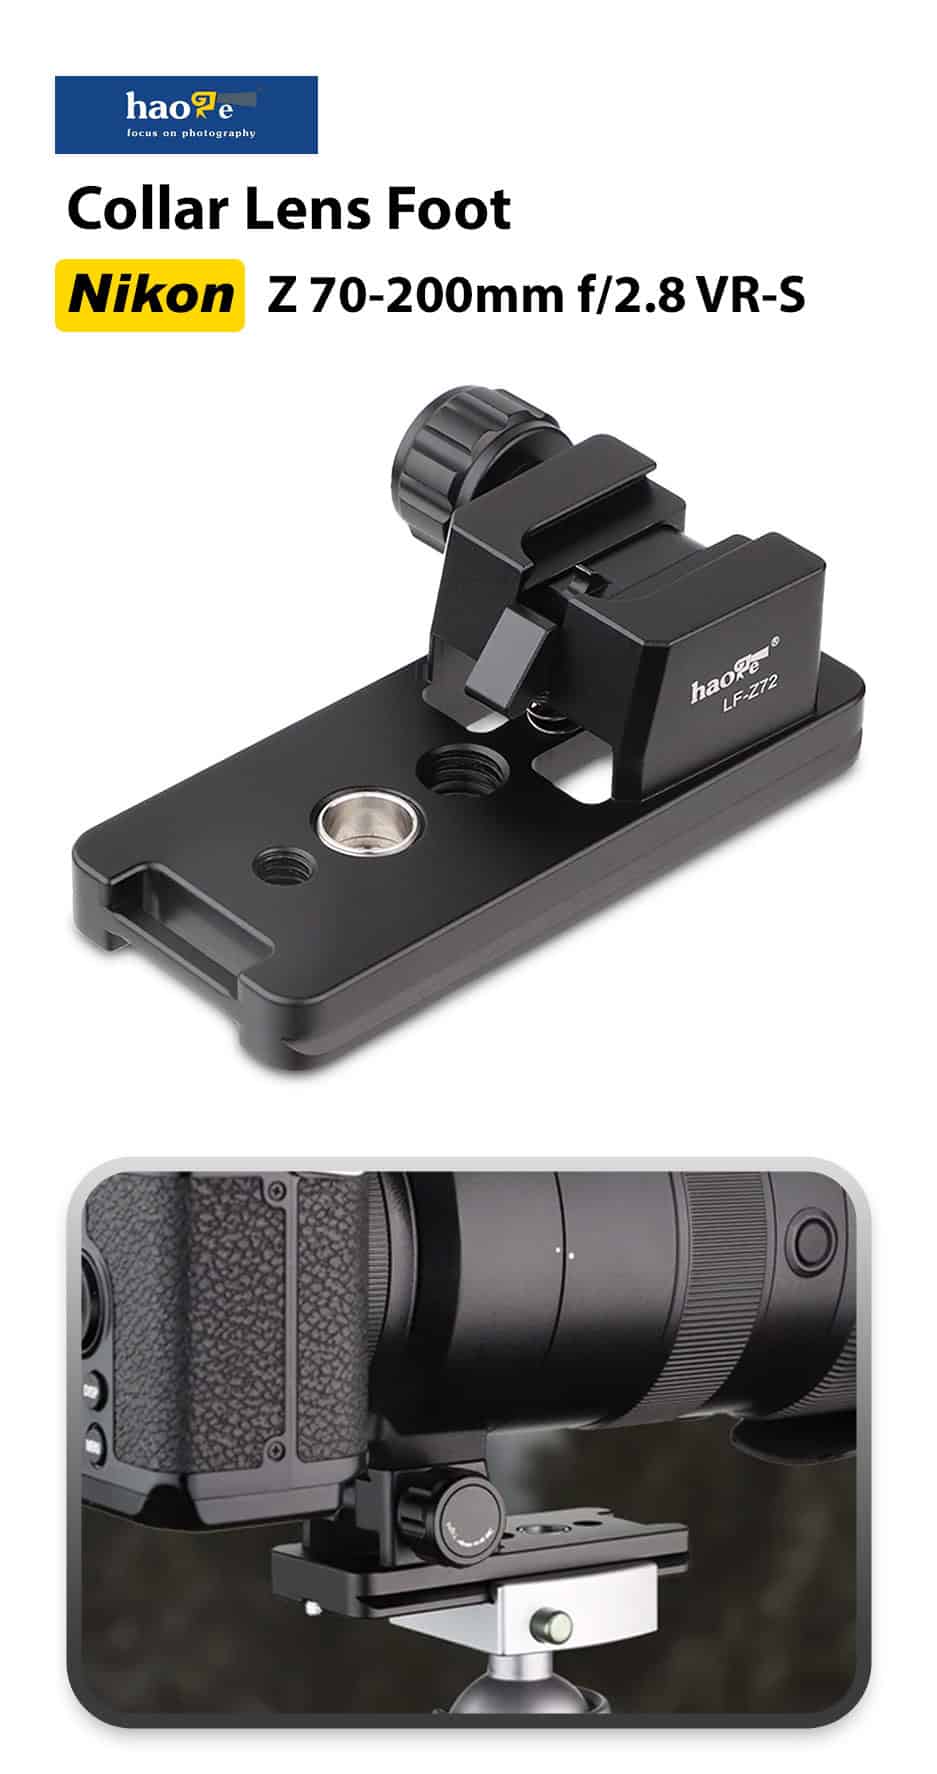 Haoge LF-Z72 Lens Foot for NIKON Z 70-200mm F2.8 VR-S